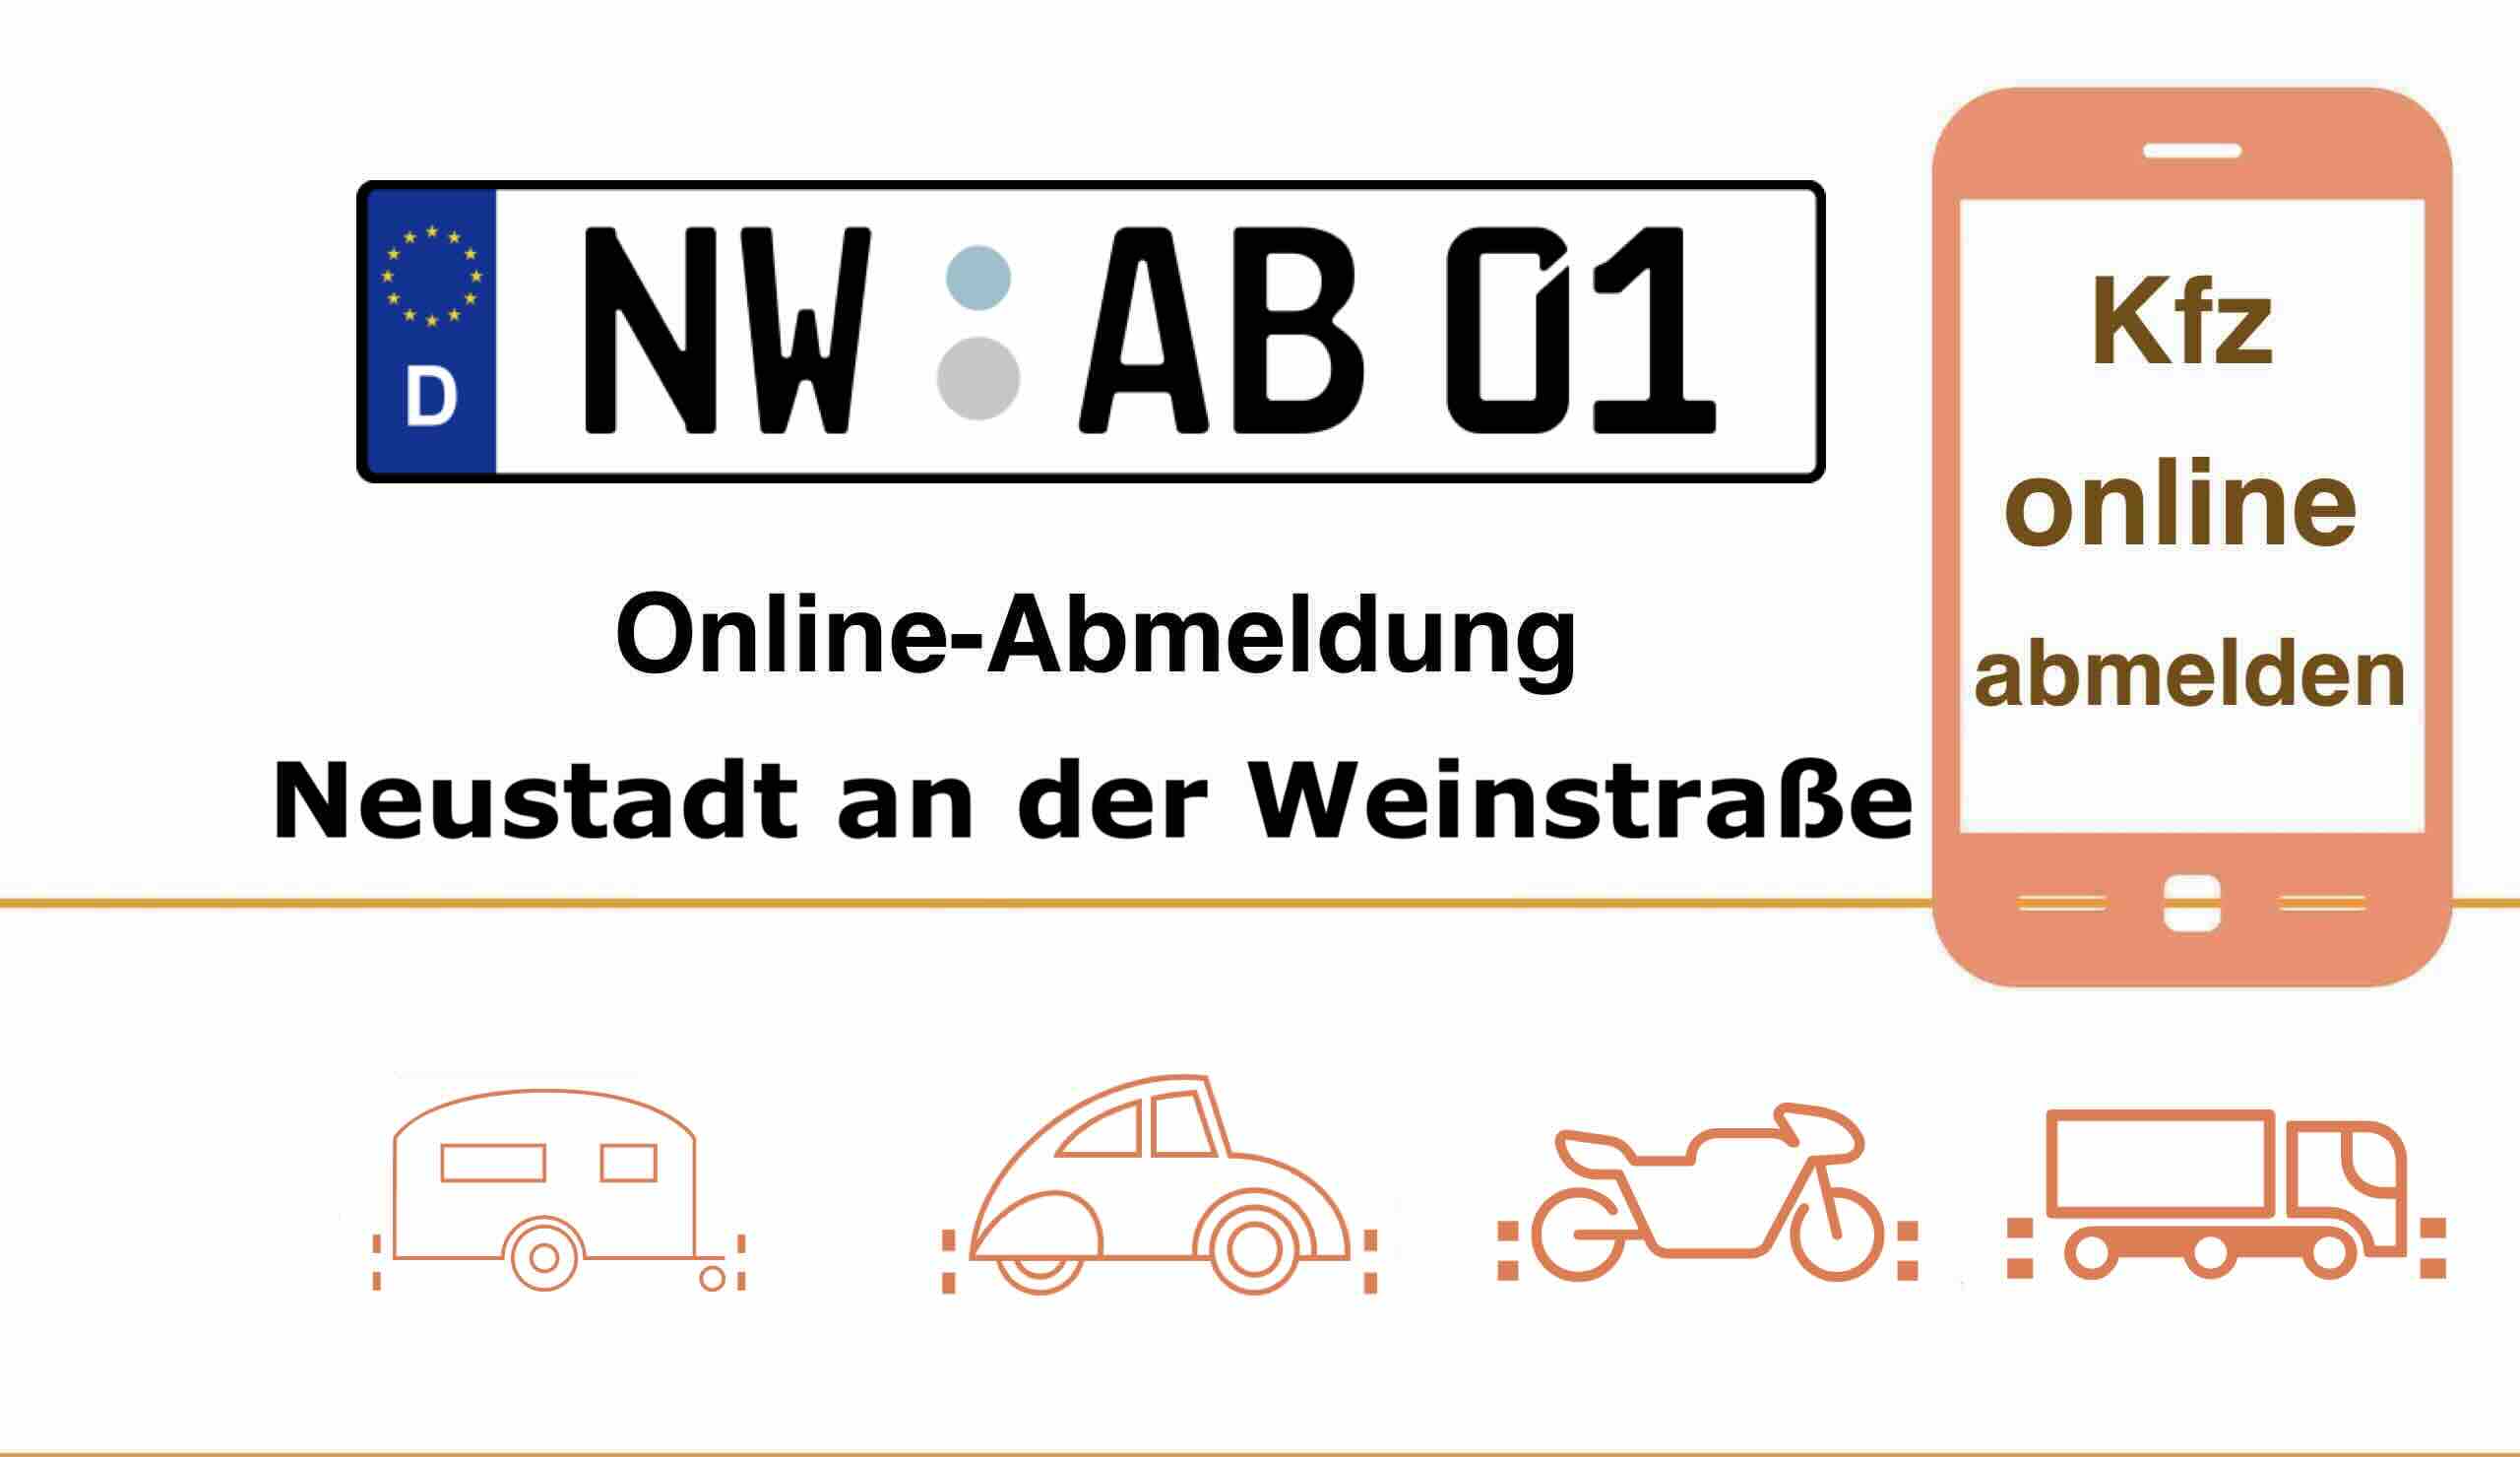 Online-Abmeldung in Neustadt an der Weinstraße 